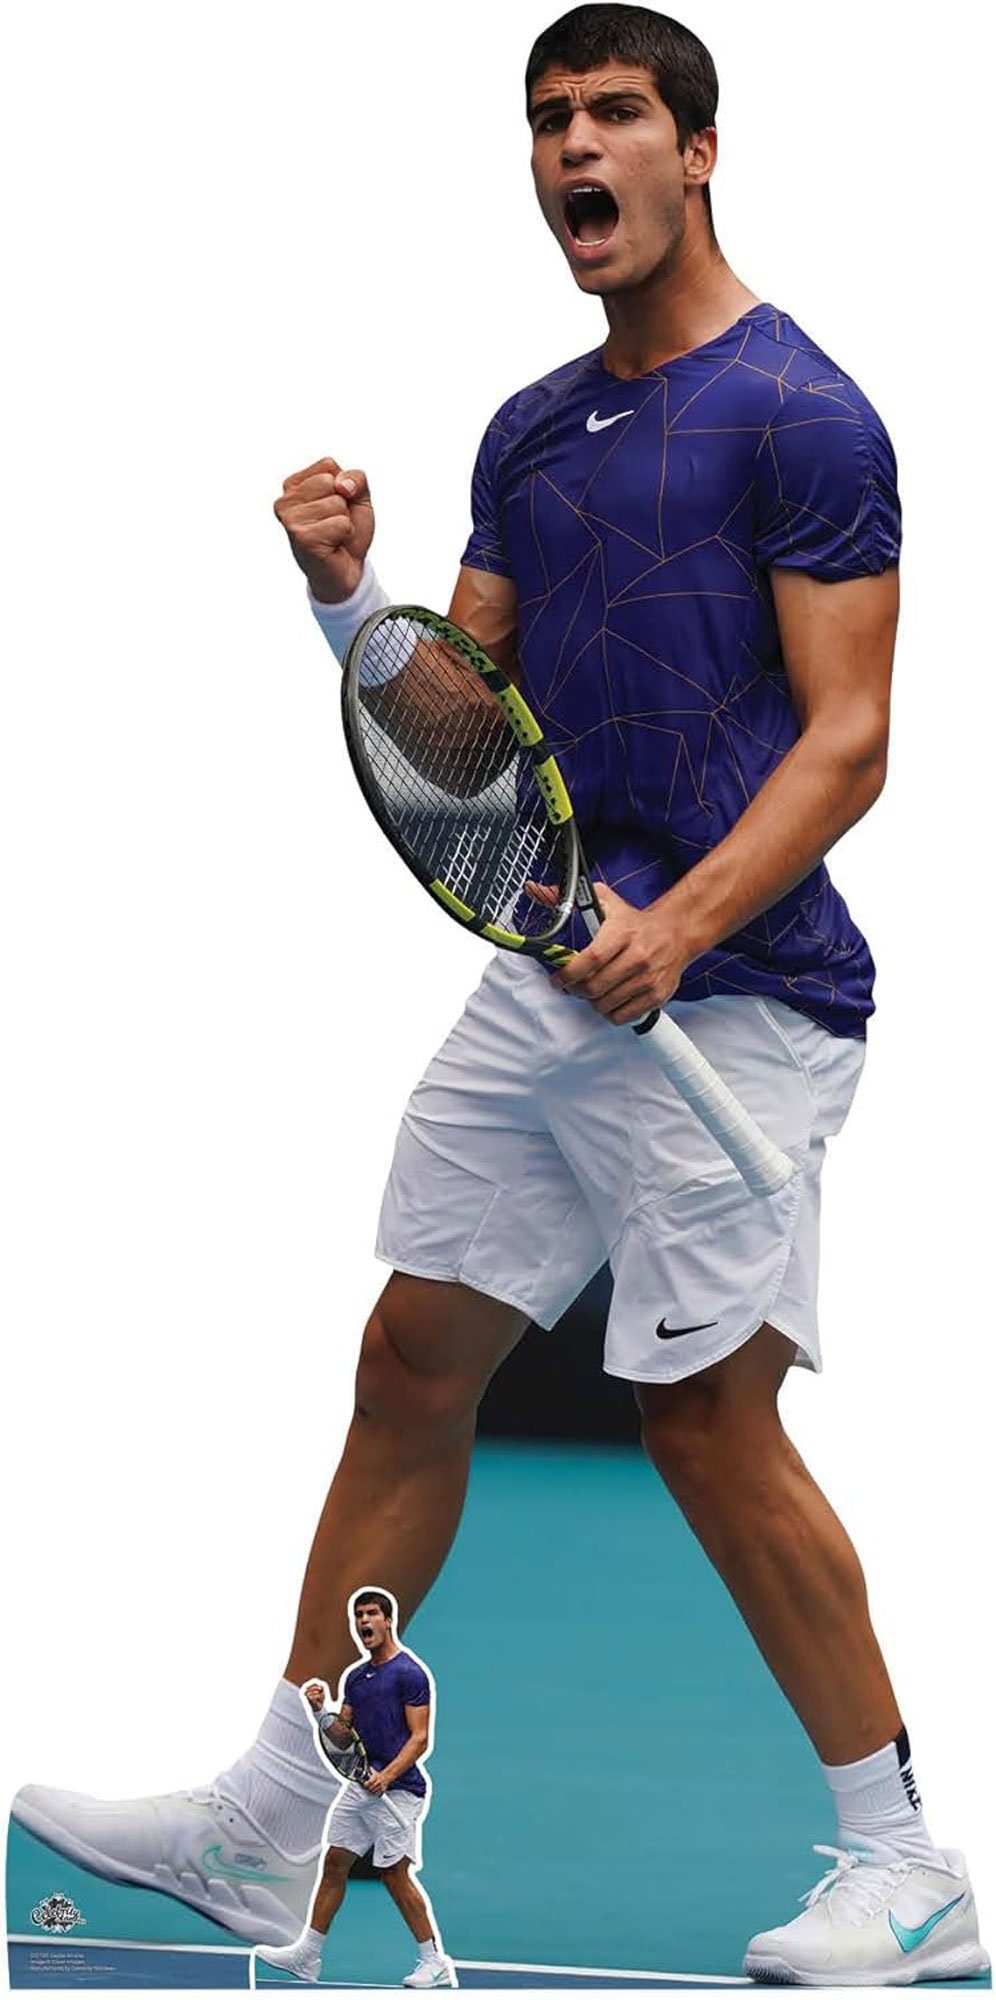 Tennis empireposter - Pappaufsteller - Dekofigur Alcaraz Carlos cm 92x185 - Standy